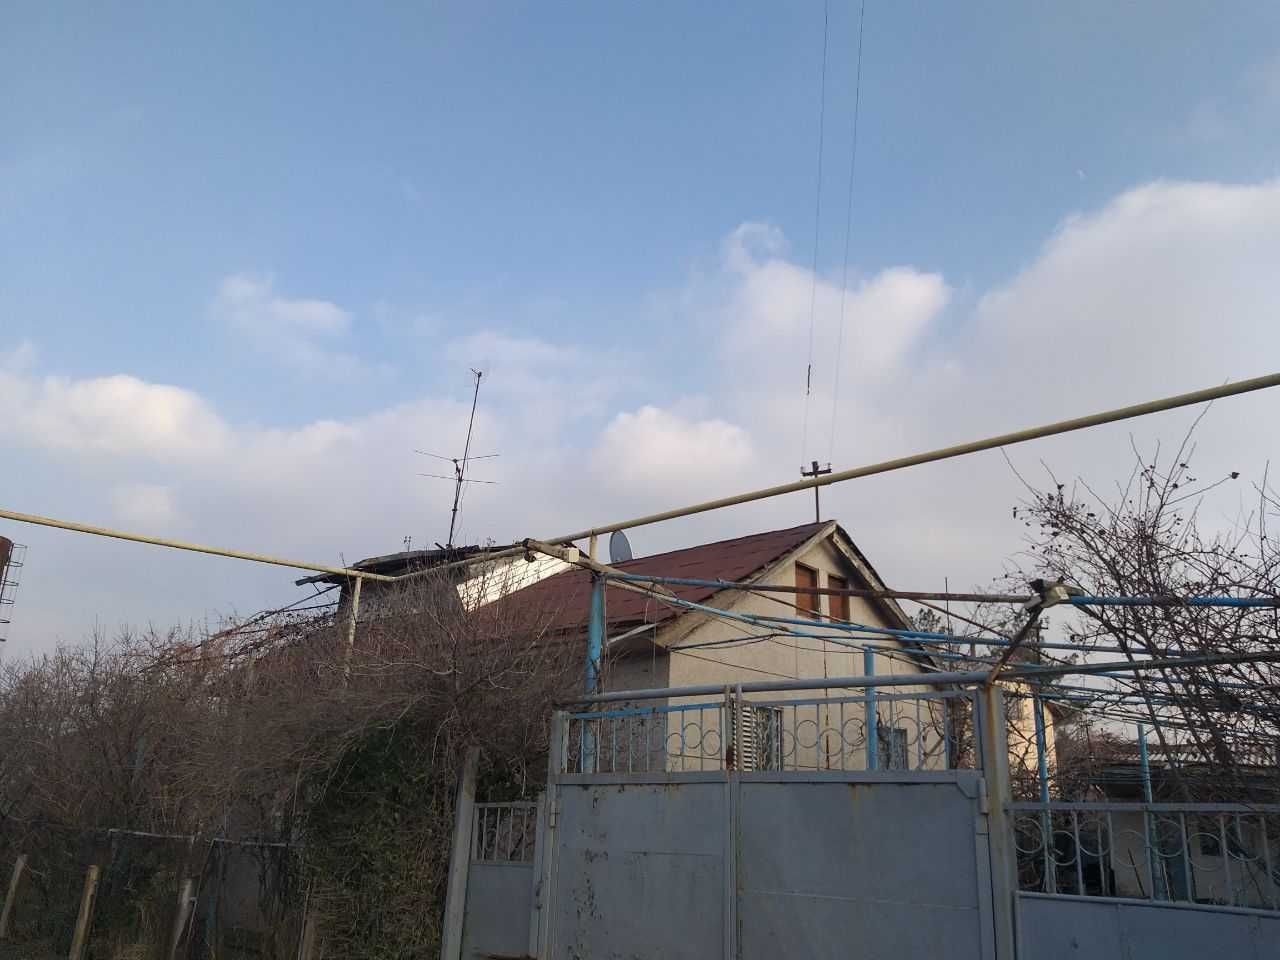 Продаётся дом в Яшнабадском районе города Ташкент